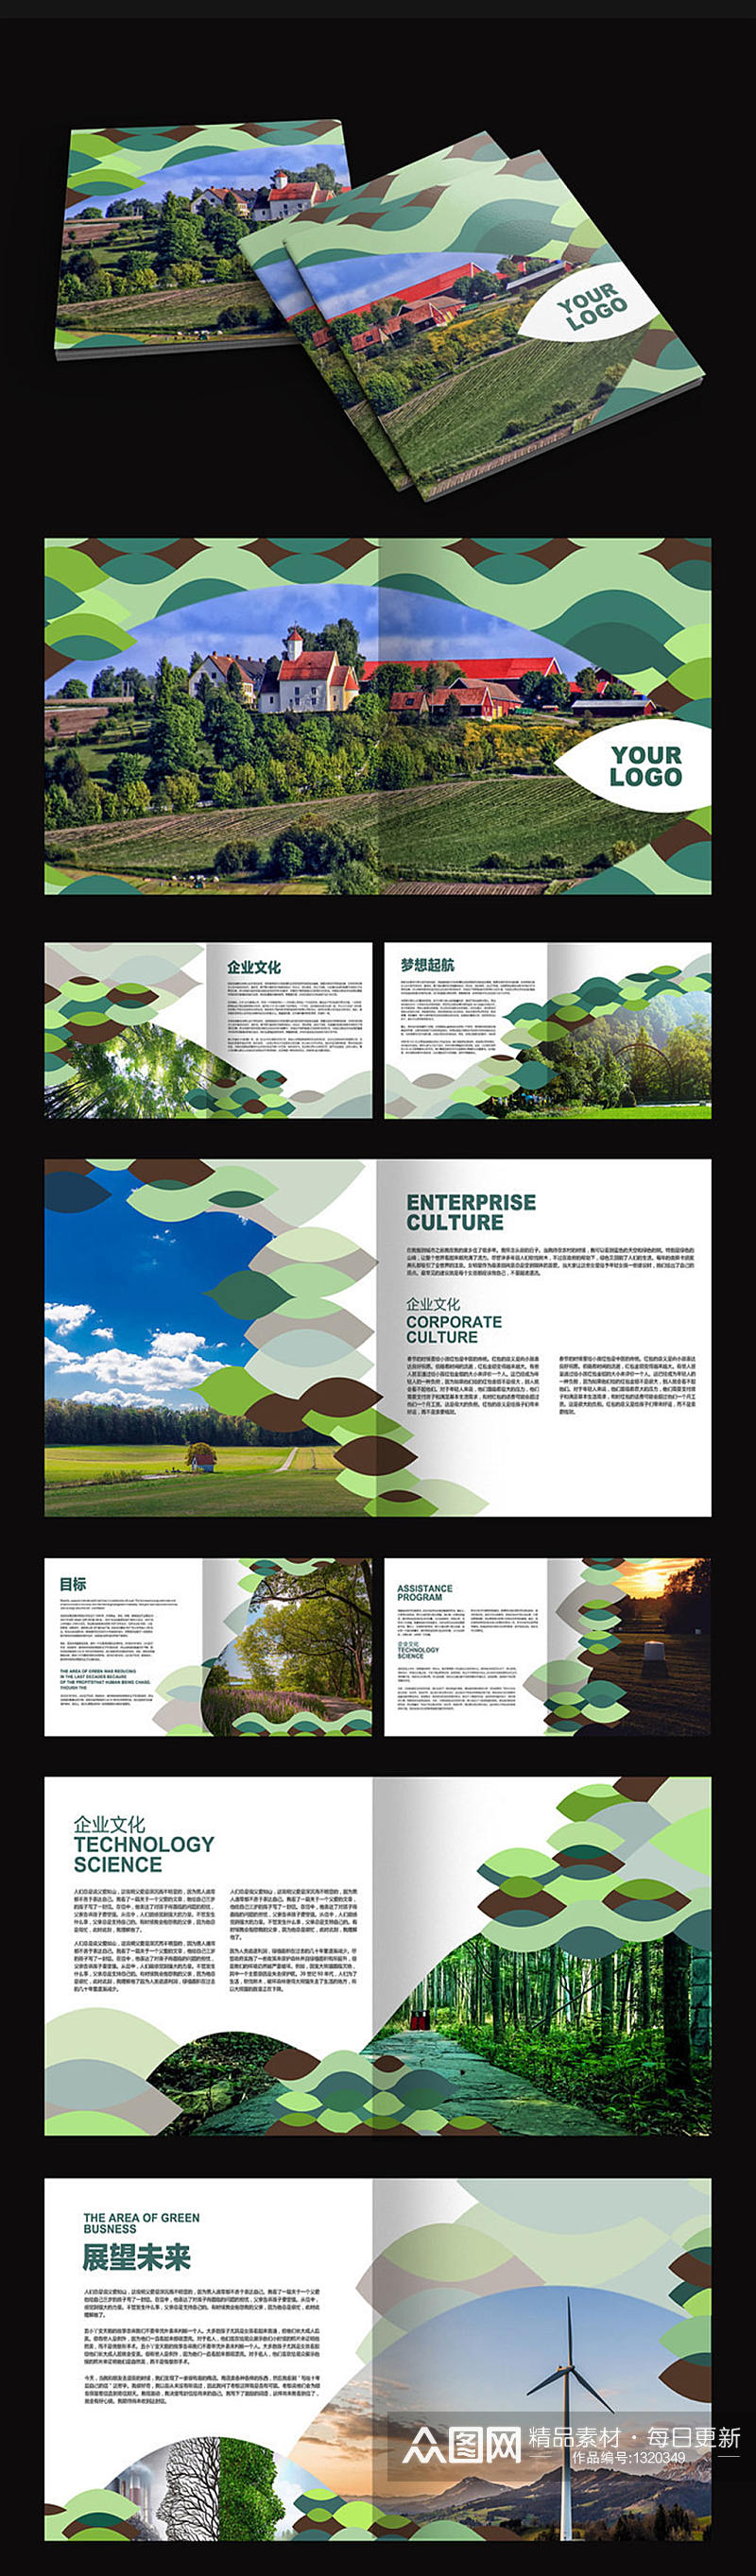 绿色环保画册设计素材